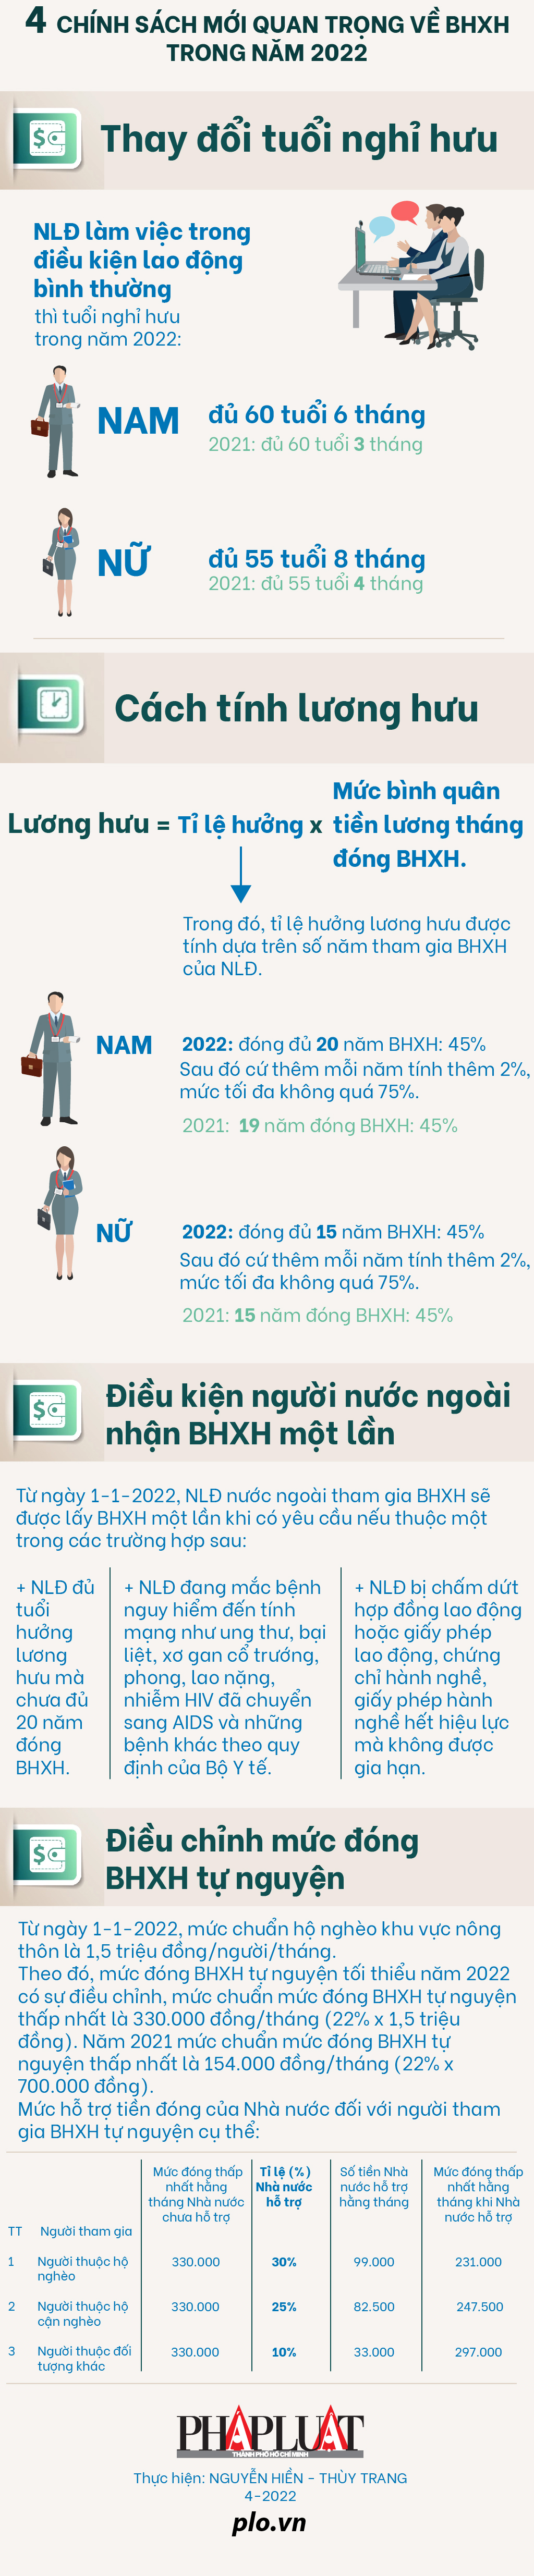 4 chính sách mới quan trọng về BHXH trong năm 2022 - 1